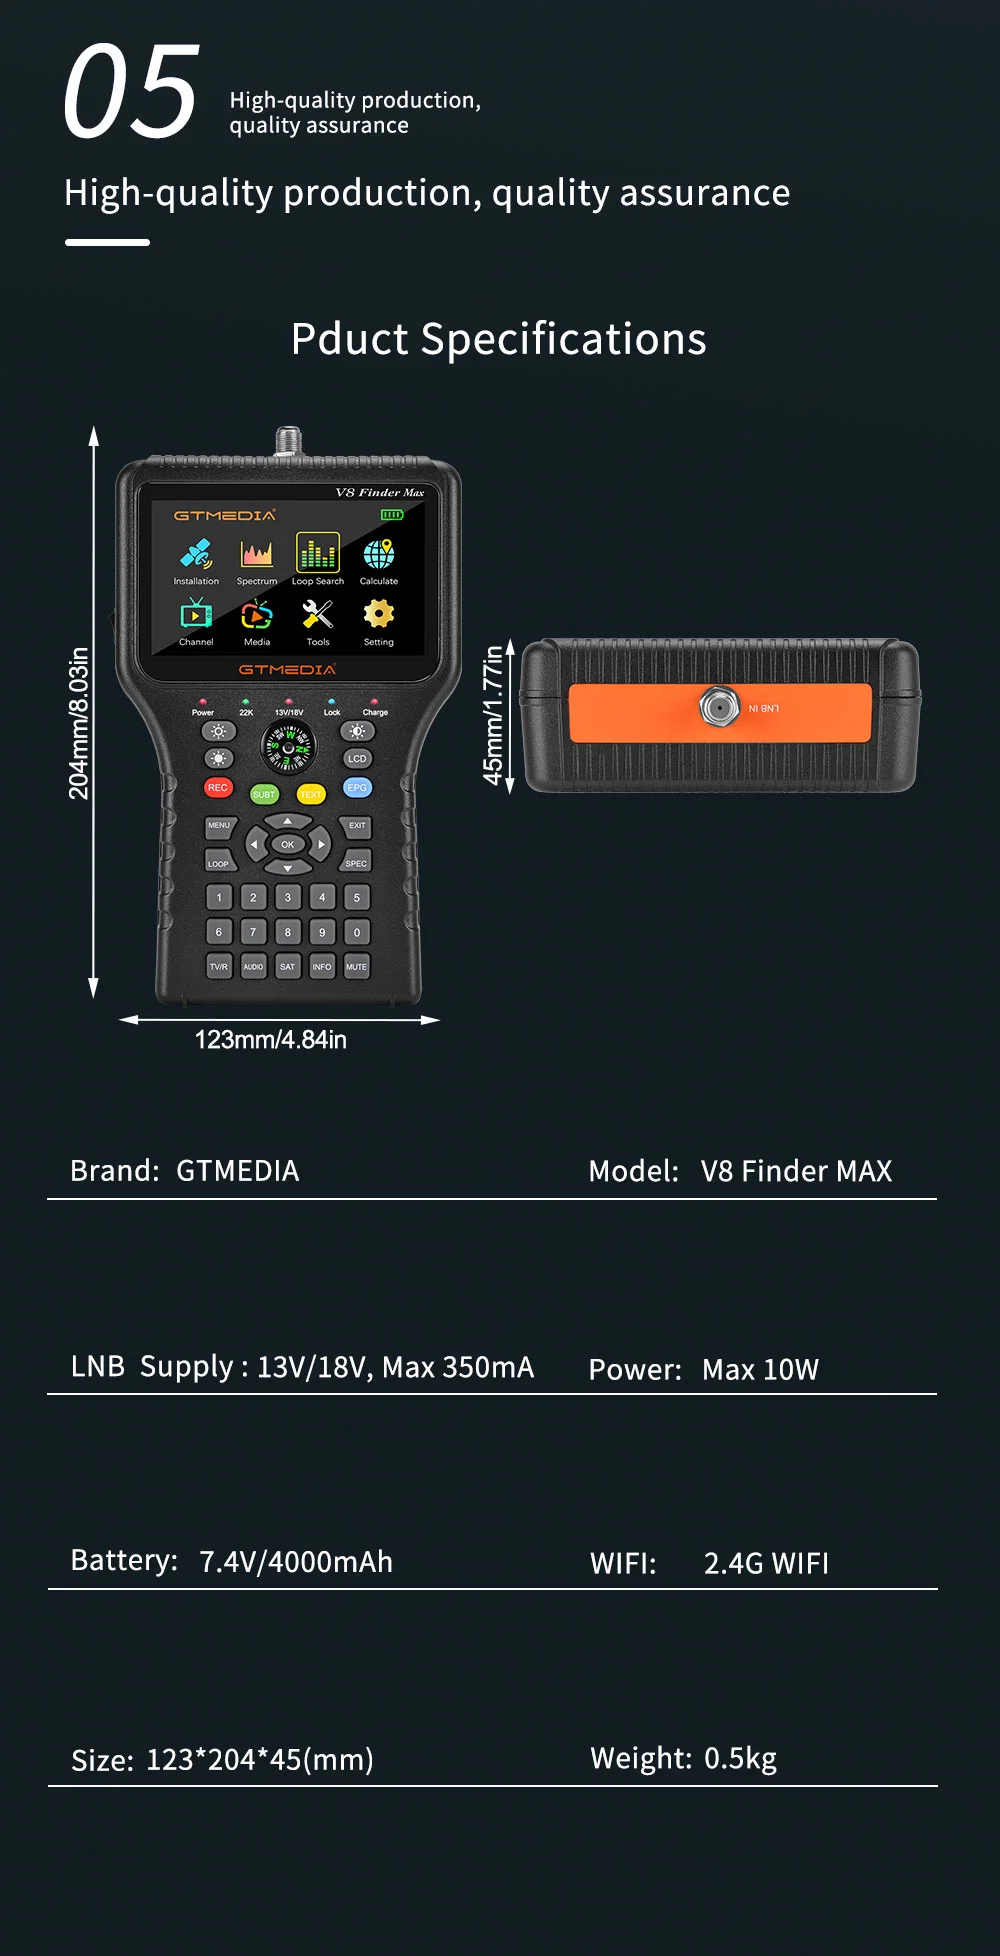 2022 New Launched Model V8 Finder Max DVB-S2X Satellite Finder Meter MPEG-4